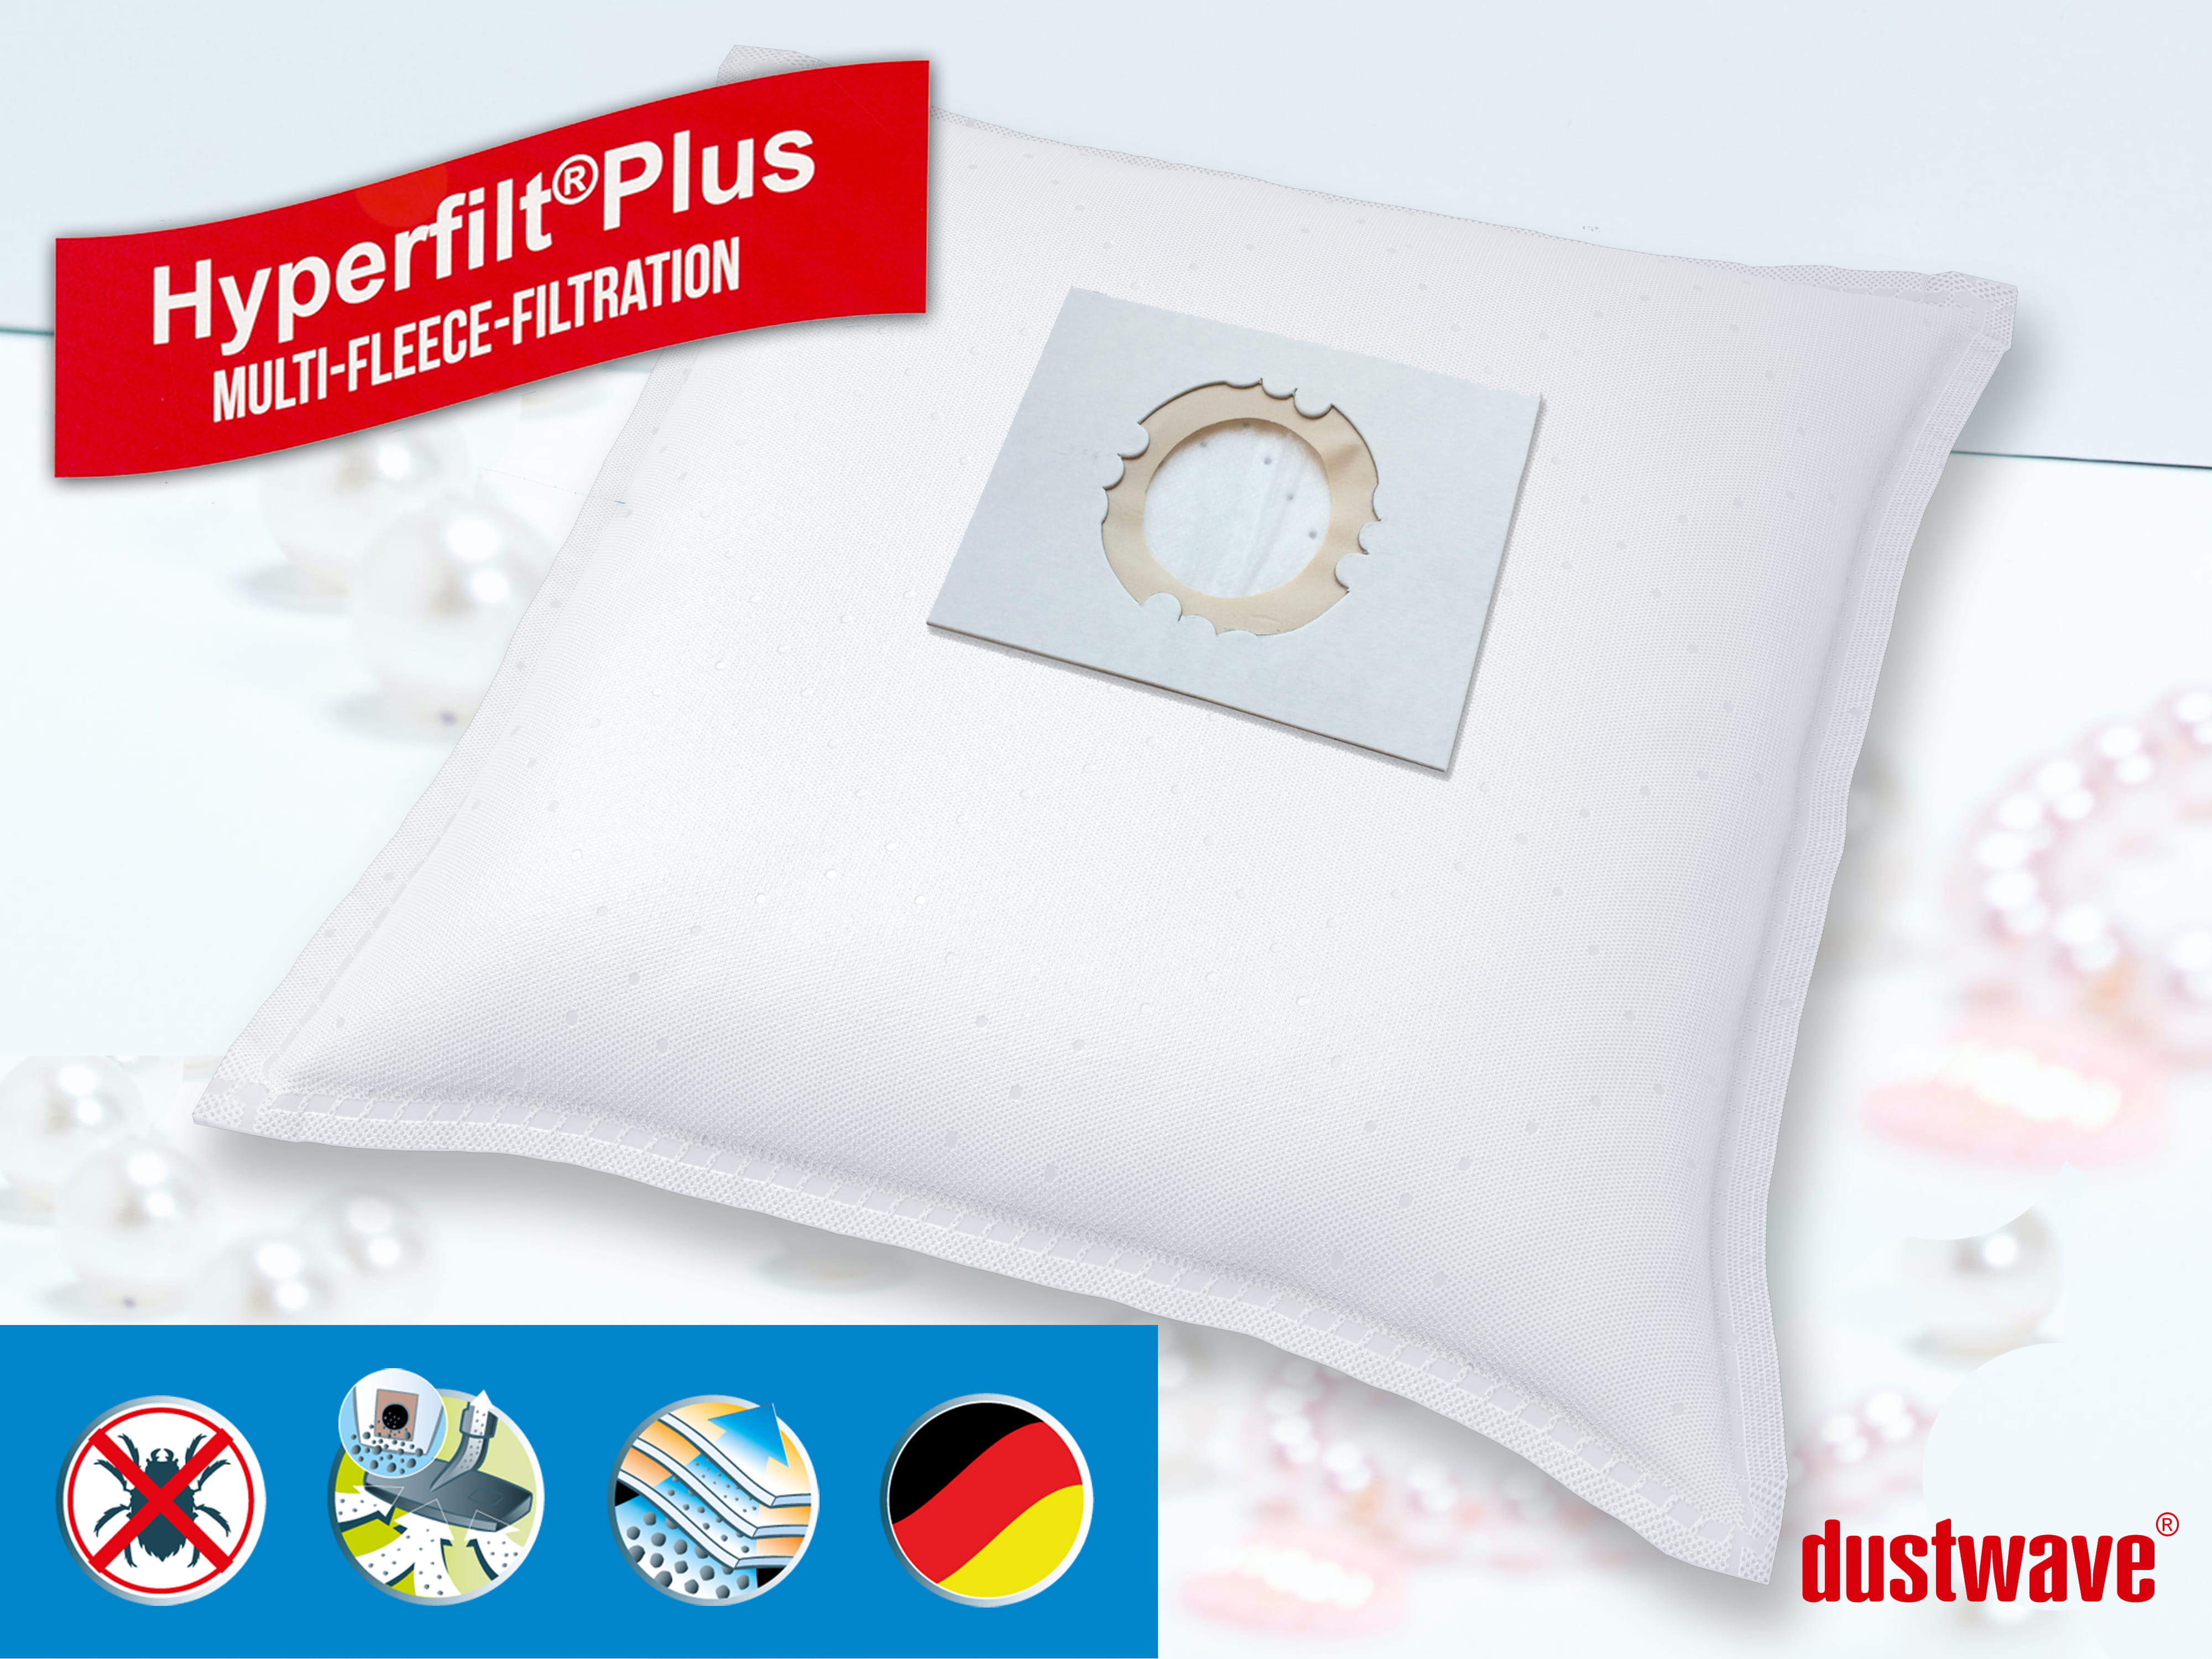 Dustwave® 1 Staubsaugerbeutel für AEG Multi 200 - hocheffizient, mehrlagiges Mikrovlies mit Hygieneverschluss - Made in Germany